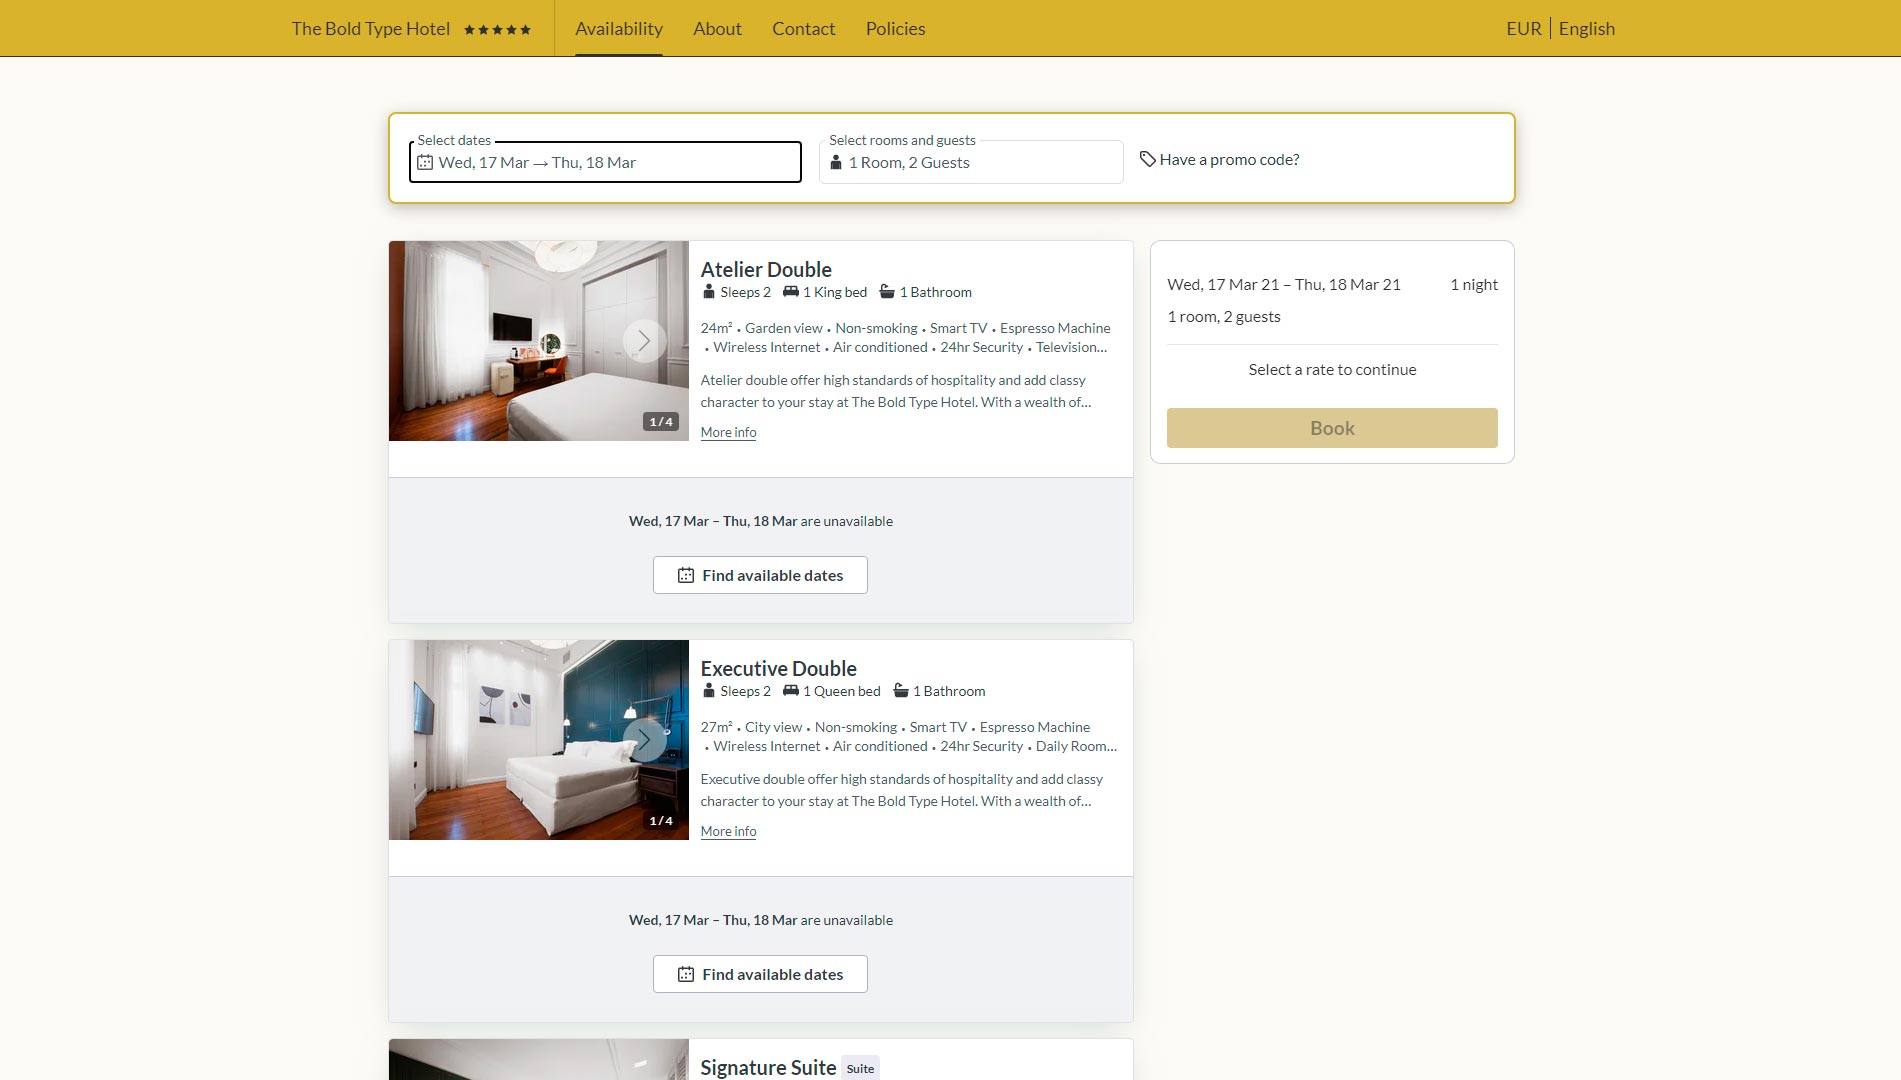 ejemplos-paginas-web-hotel-bold-typo-2-